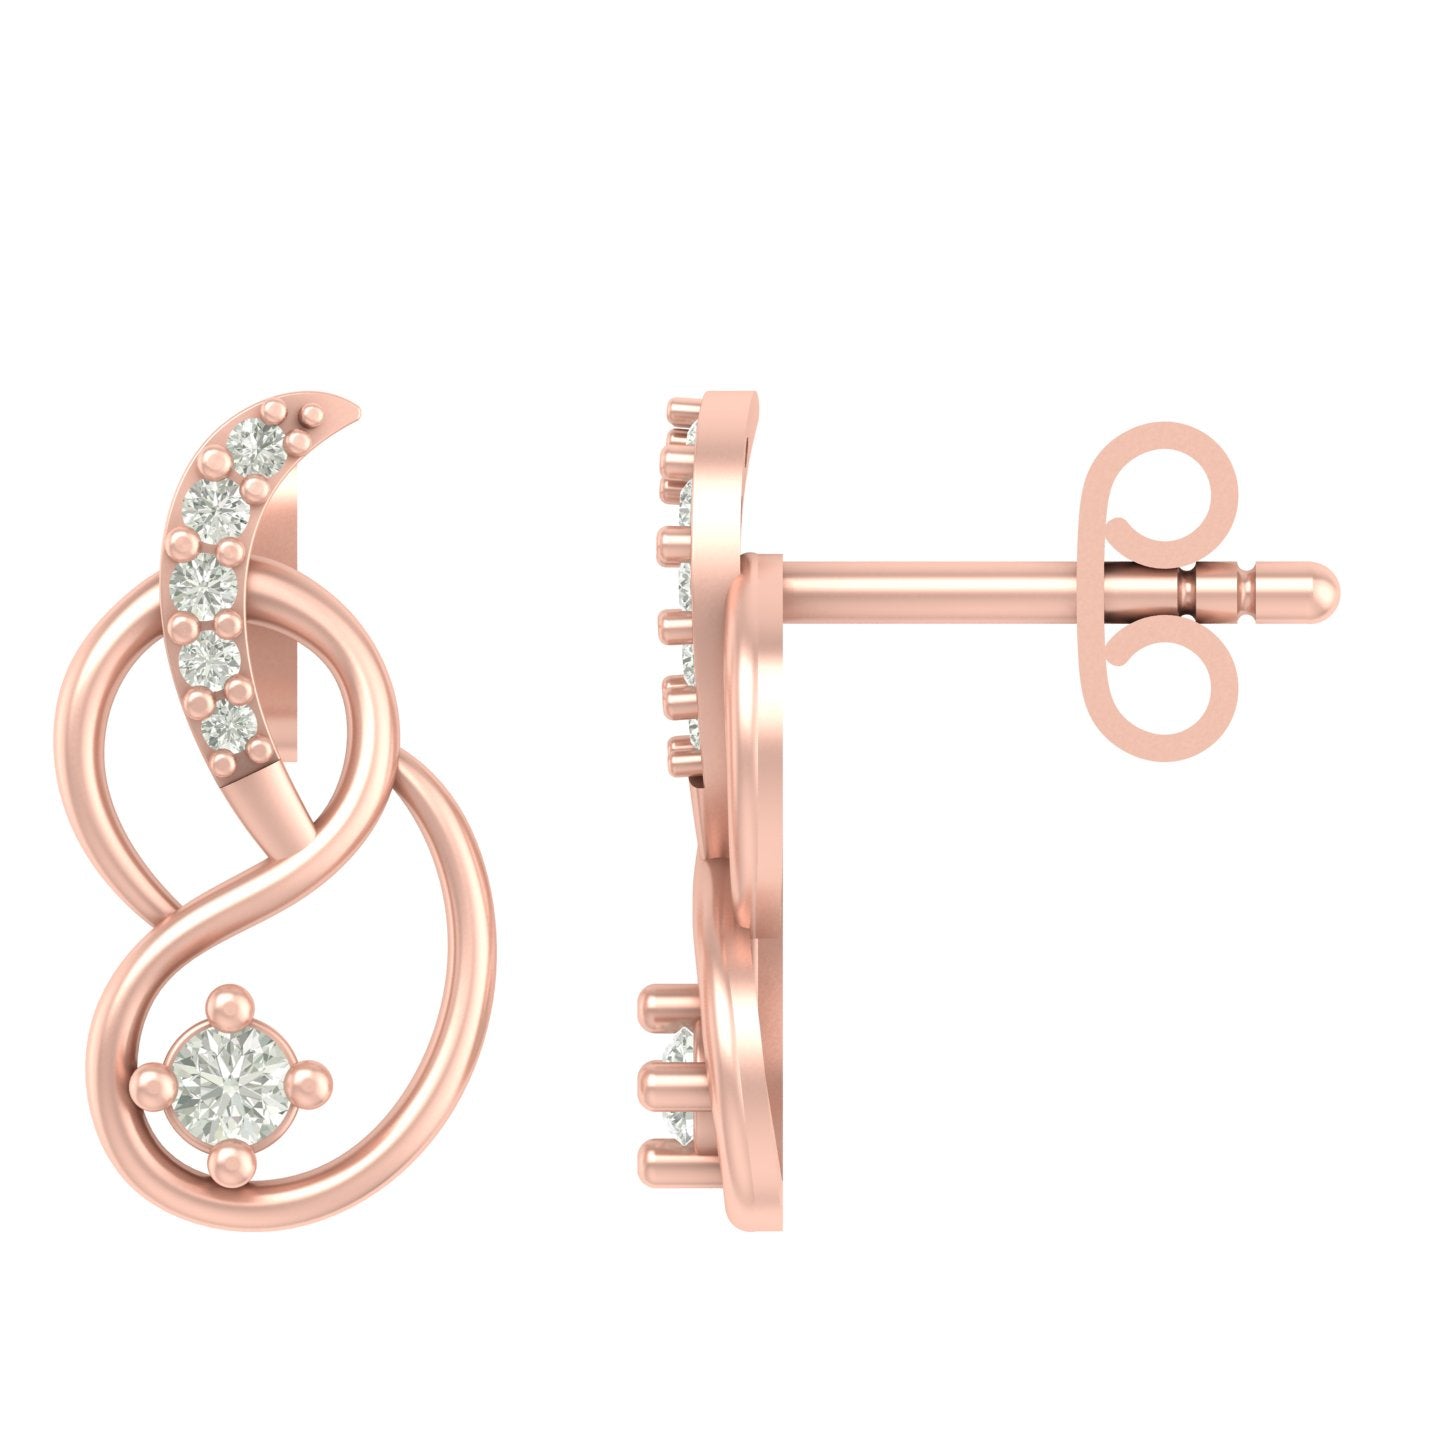 Flutura modern lab diamond earrings design